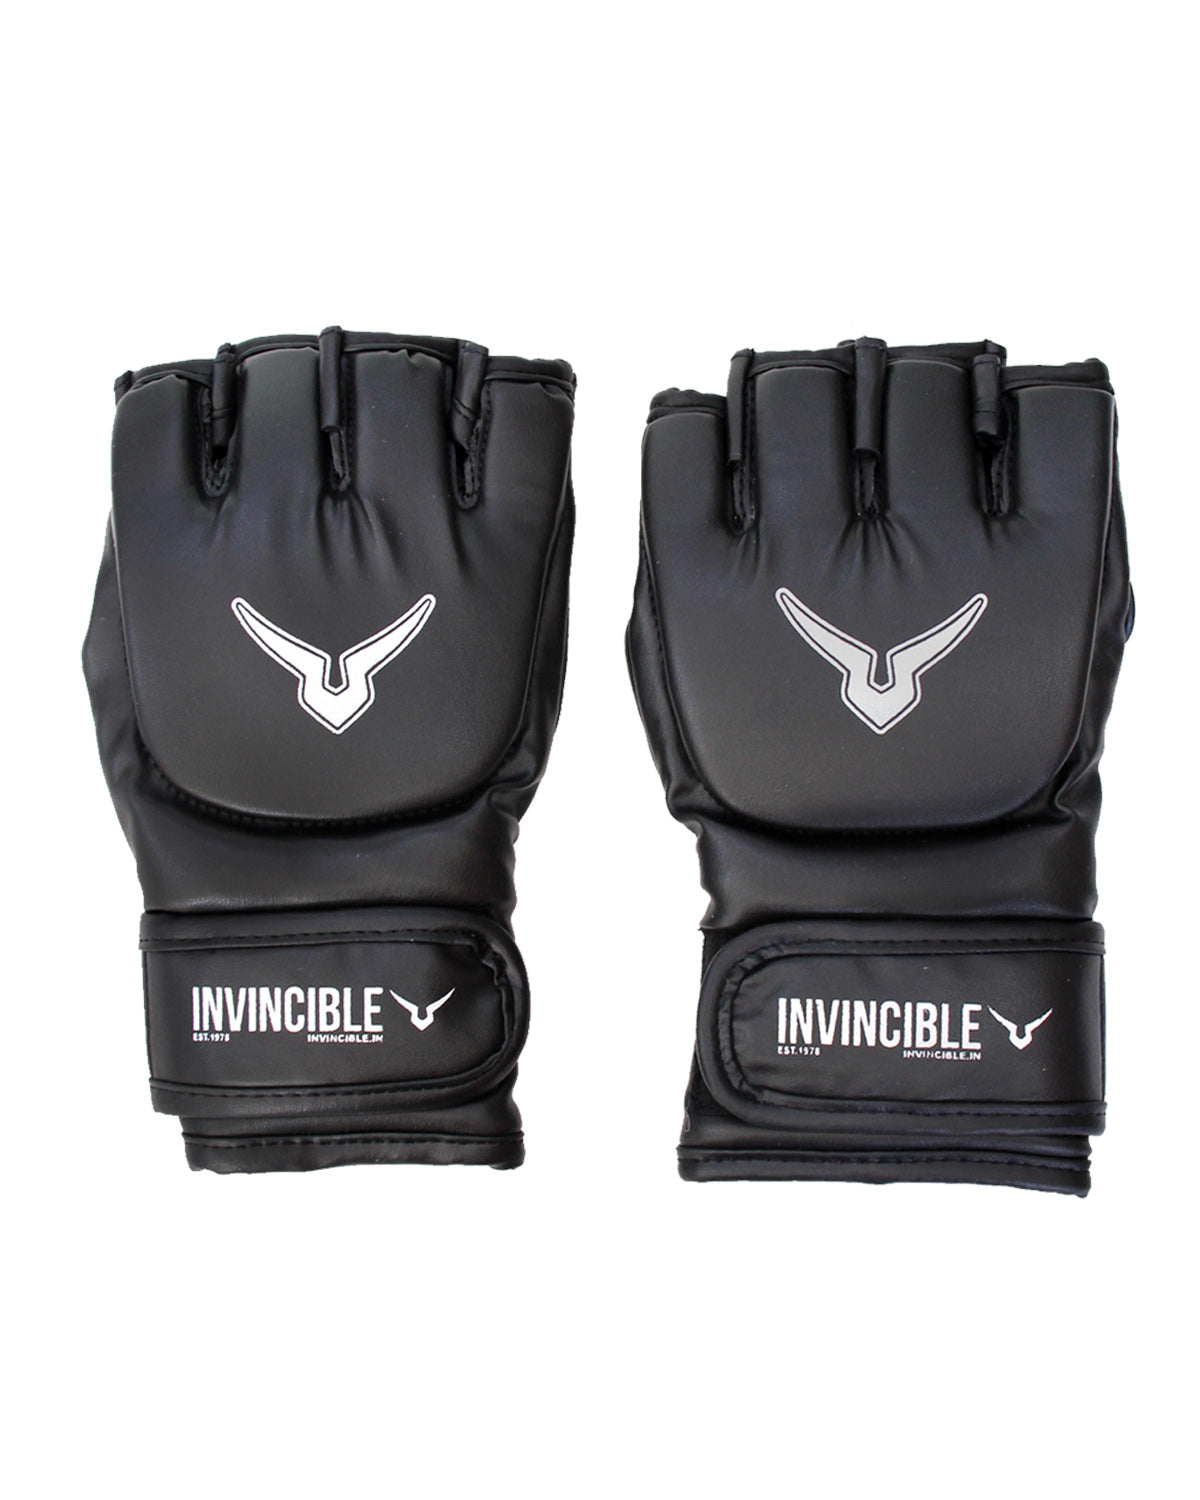 Invincible Beginner's MMA Combat Gloves